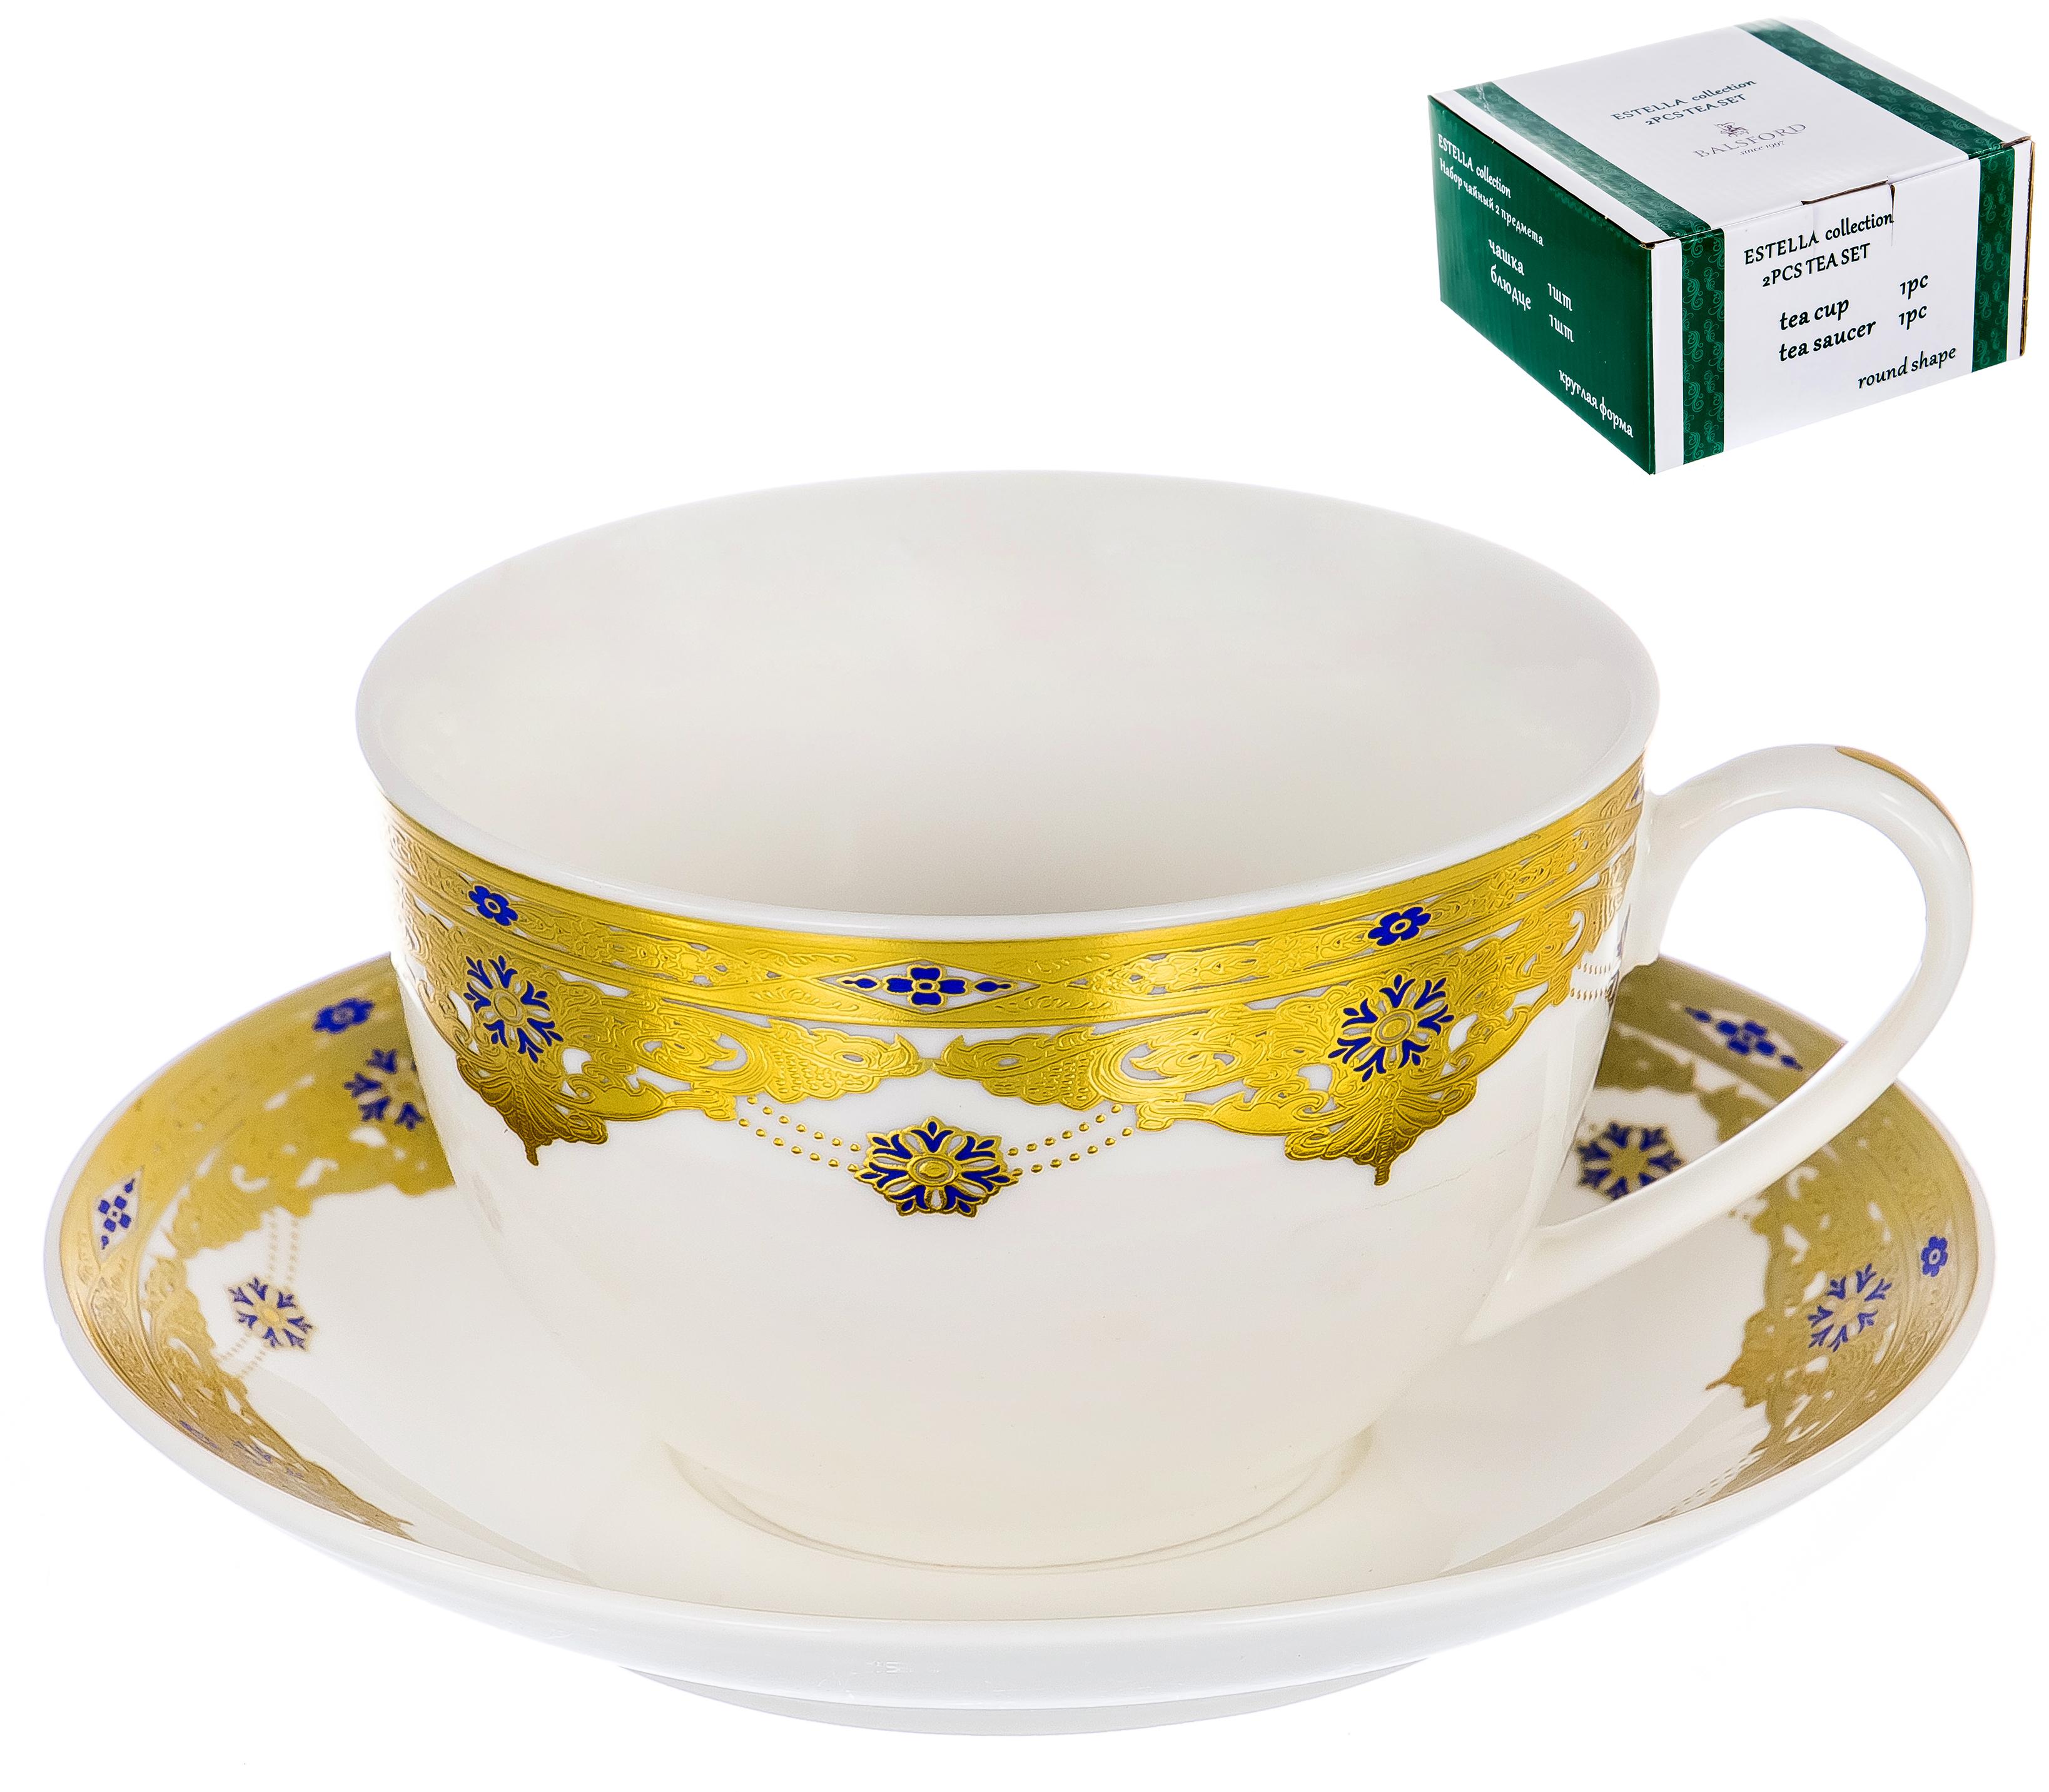 ЭСТЕЛЛА, набор чайный (2) чашка 240мл + блюдце, NEW BONE CHINA, цвет дизайн с золотом 123-16018